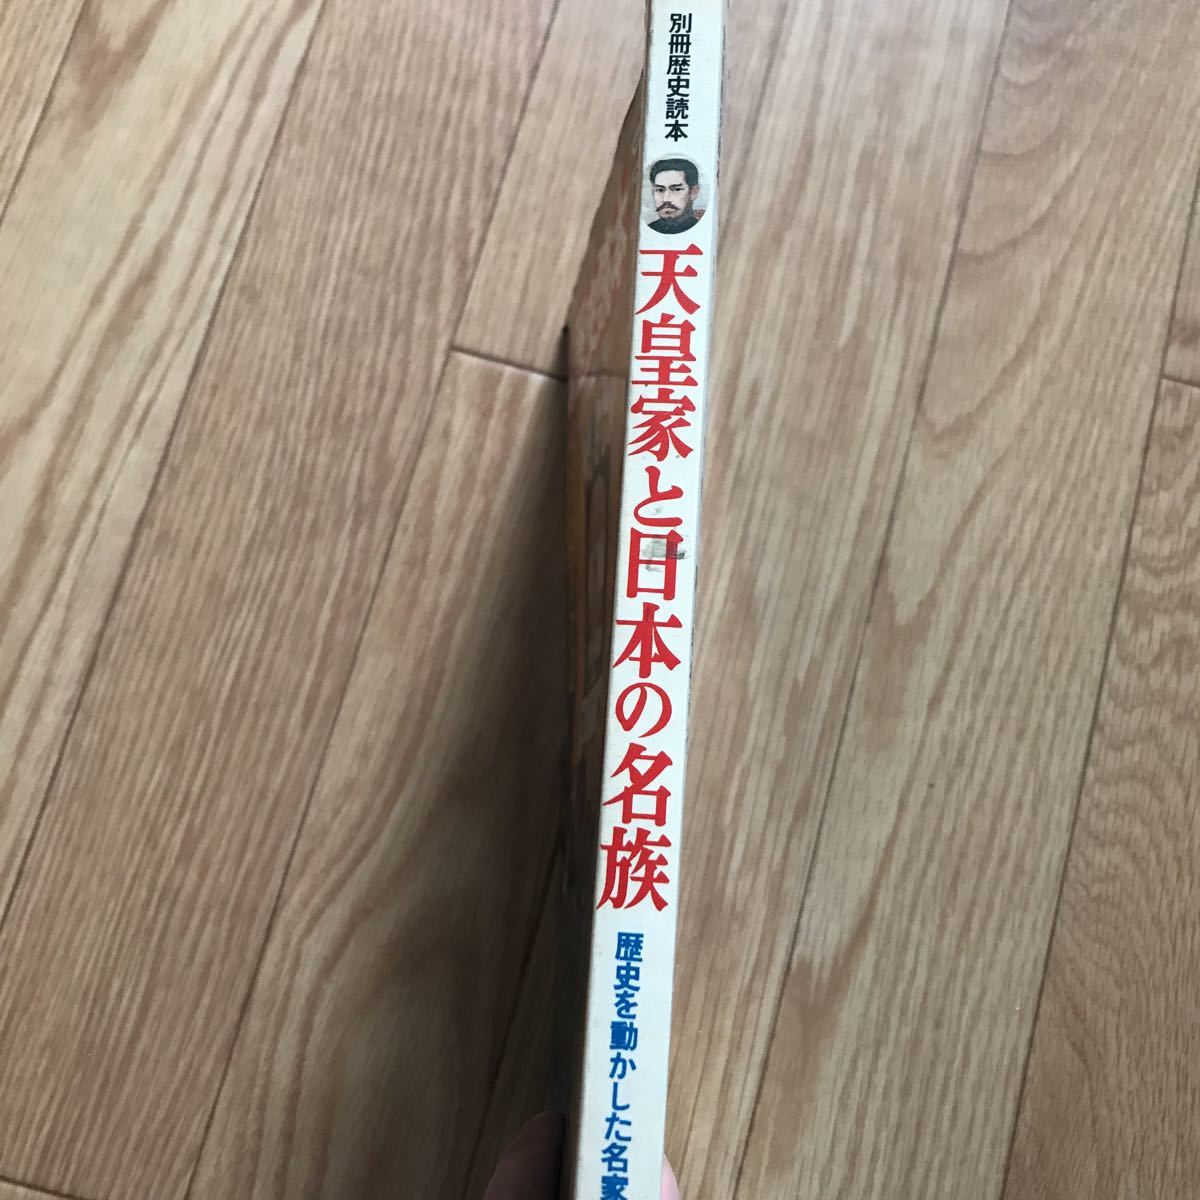 別冊歴史読本 49 天皇家と日本の名族 歴史を動かした連綿たる名家の血脈 第12巻第3号 3ページにボールペンと鉛筆による書き込み有り_画像3